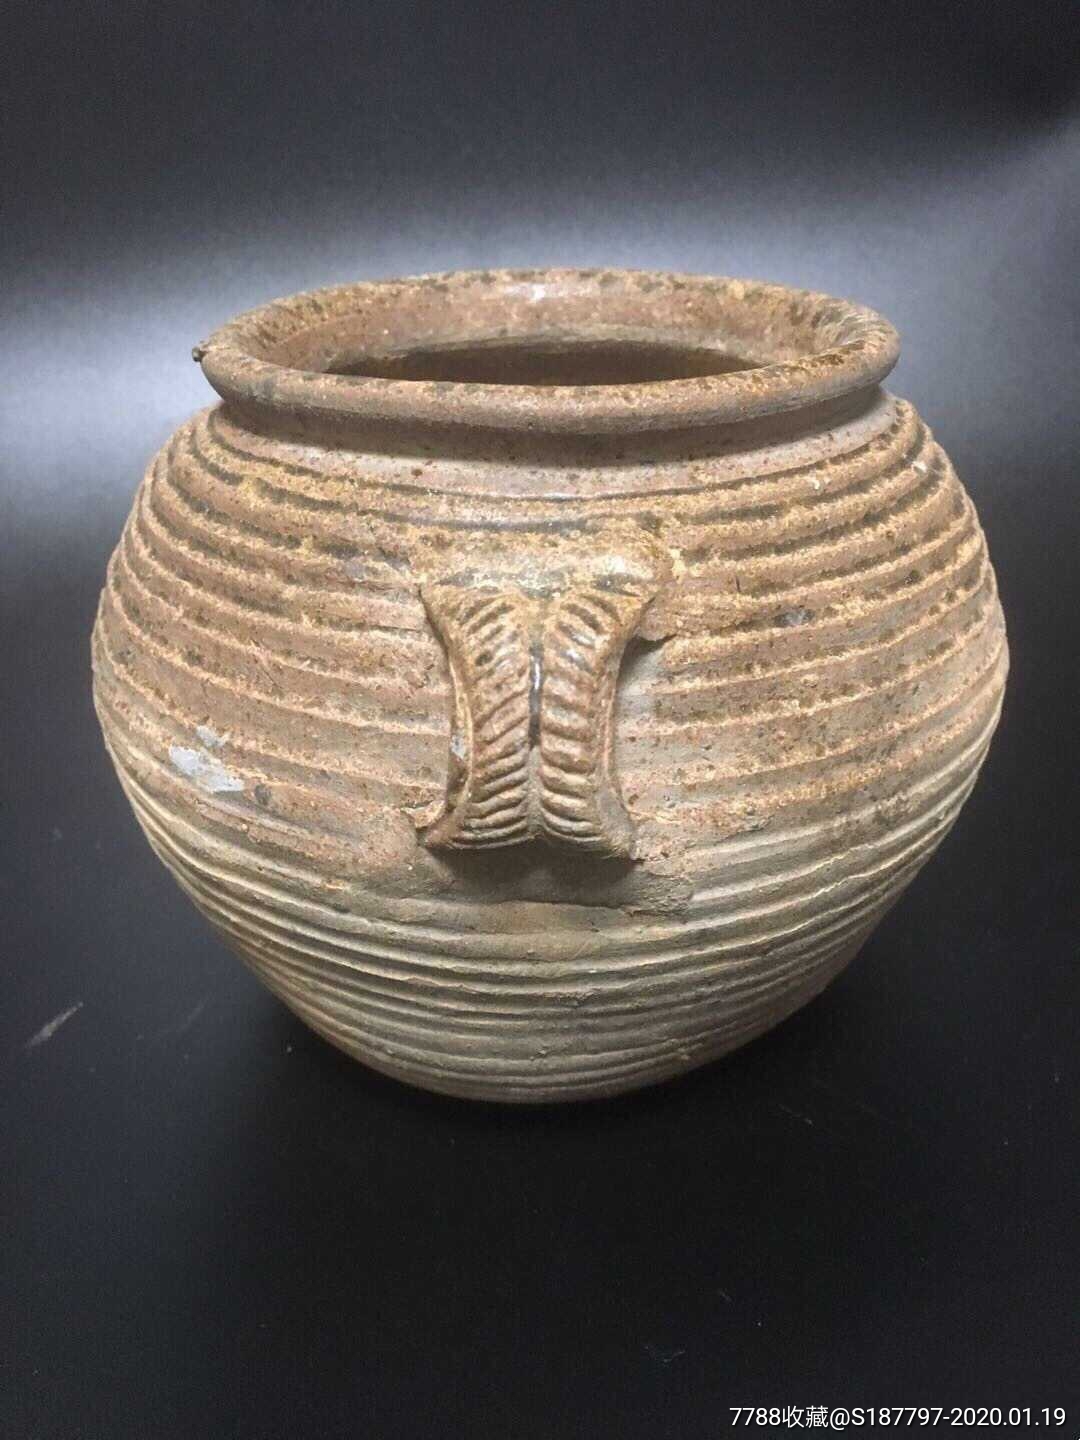 原始瓷汉代原始青瓷双系罐